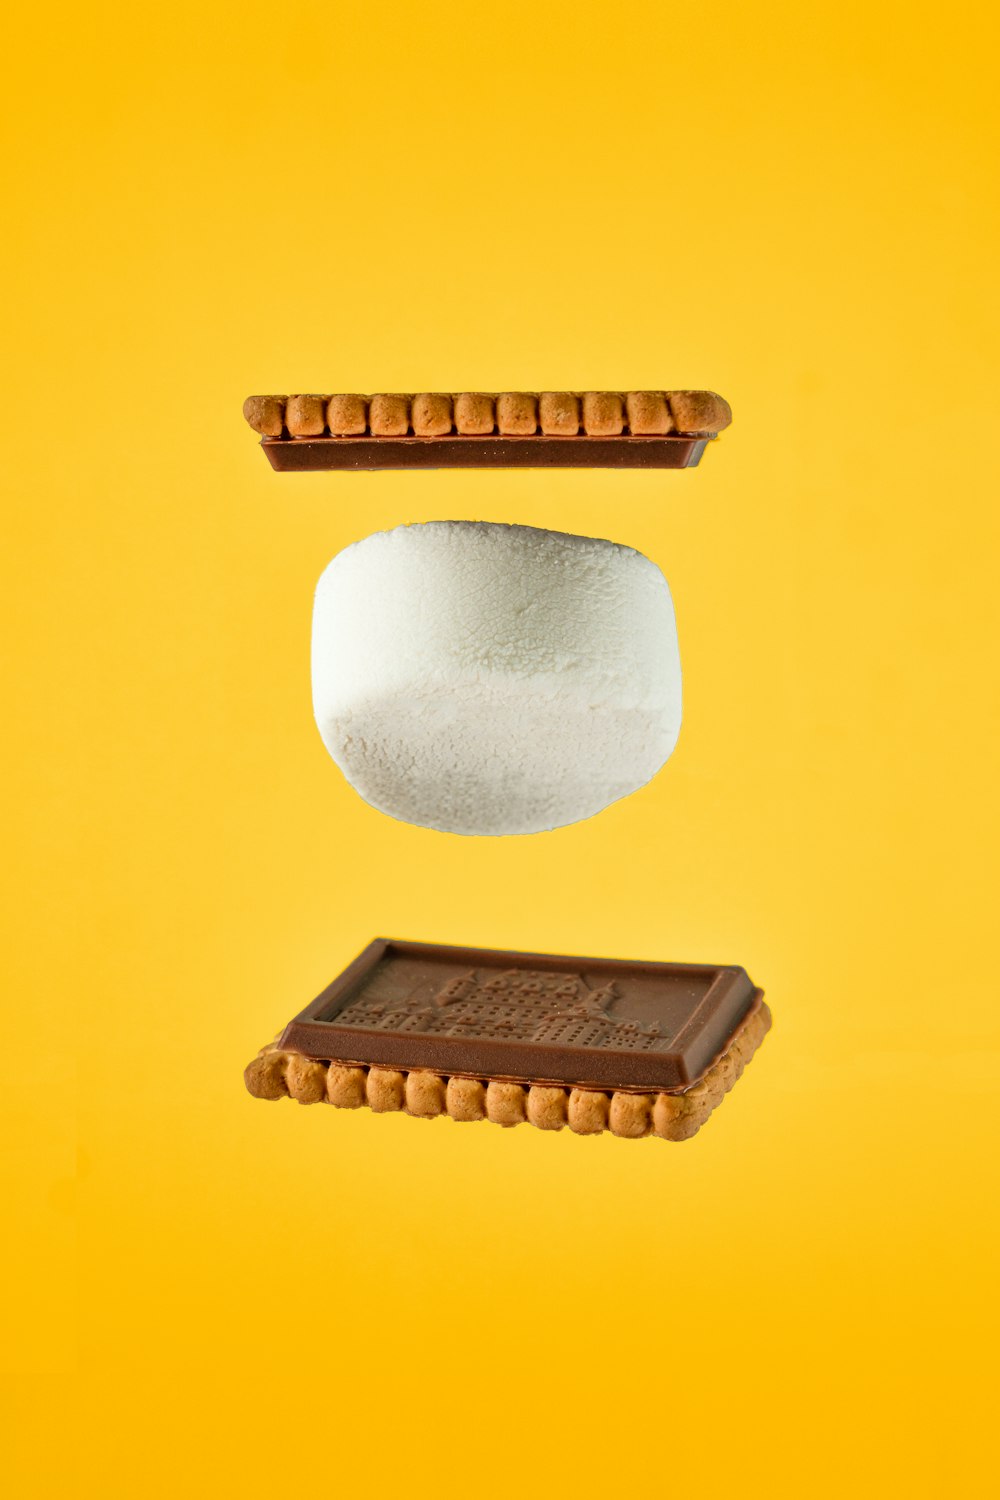 dois comprimidos e uma barra de chocolate em um fundo amarelo